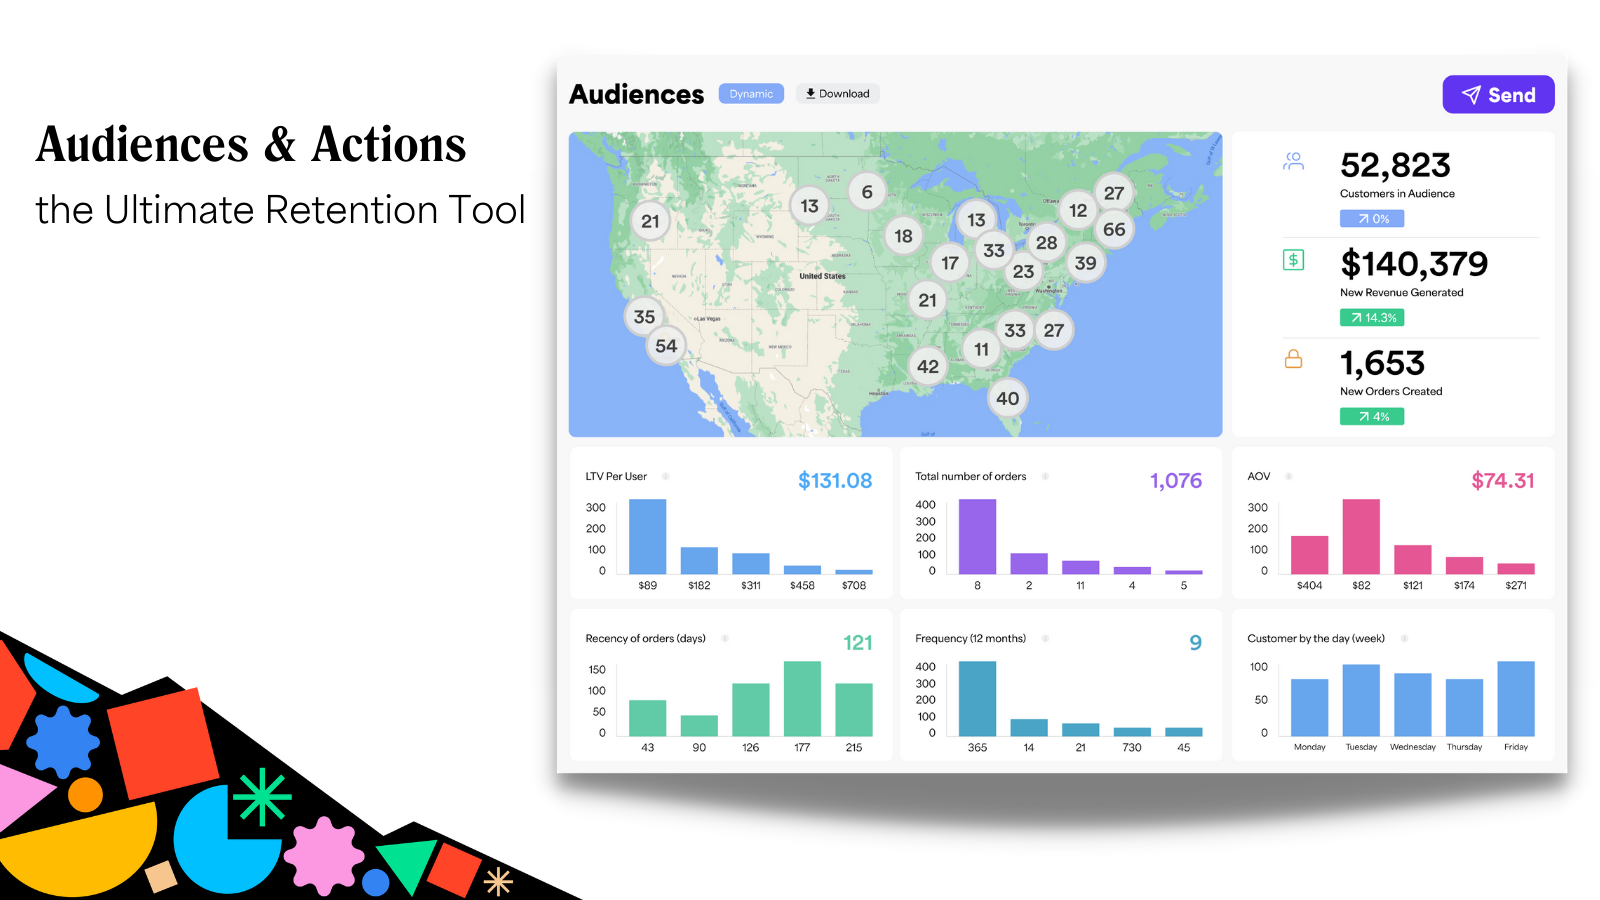 Publikumsvisning - viser kort & diagrammer